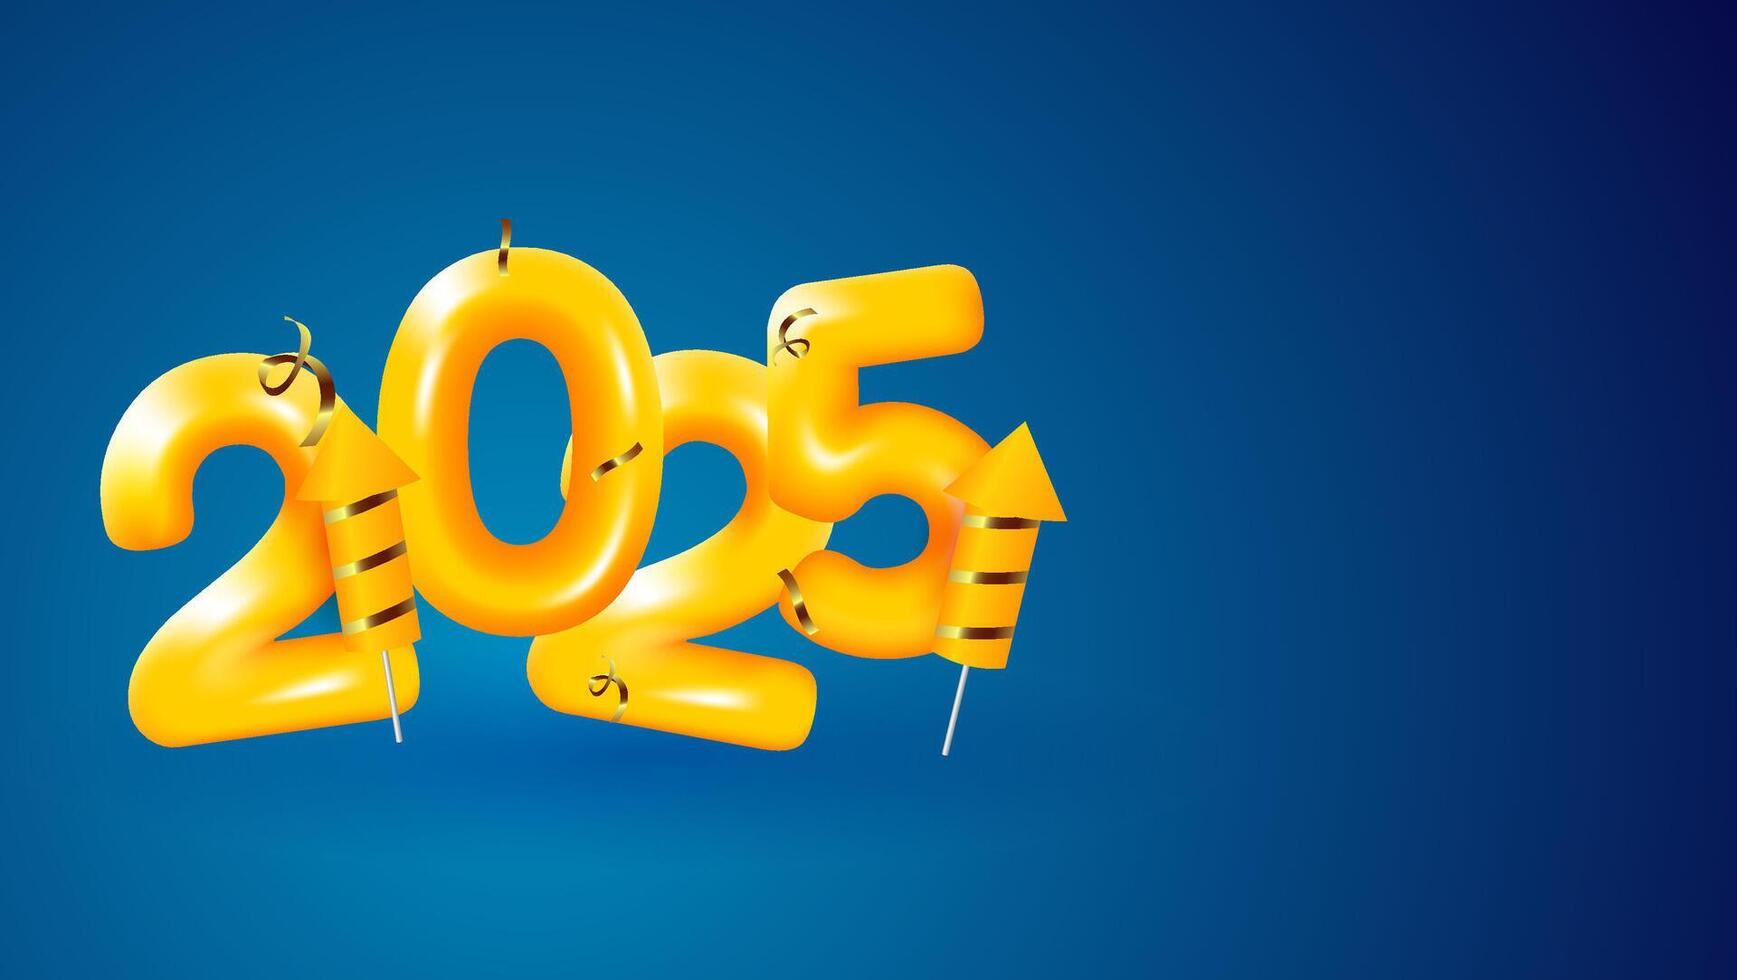 2025 Text Design im Orange oder Gelb Farbe mit Feuerwerk und Konfetti. Vektor Illustration